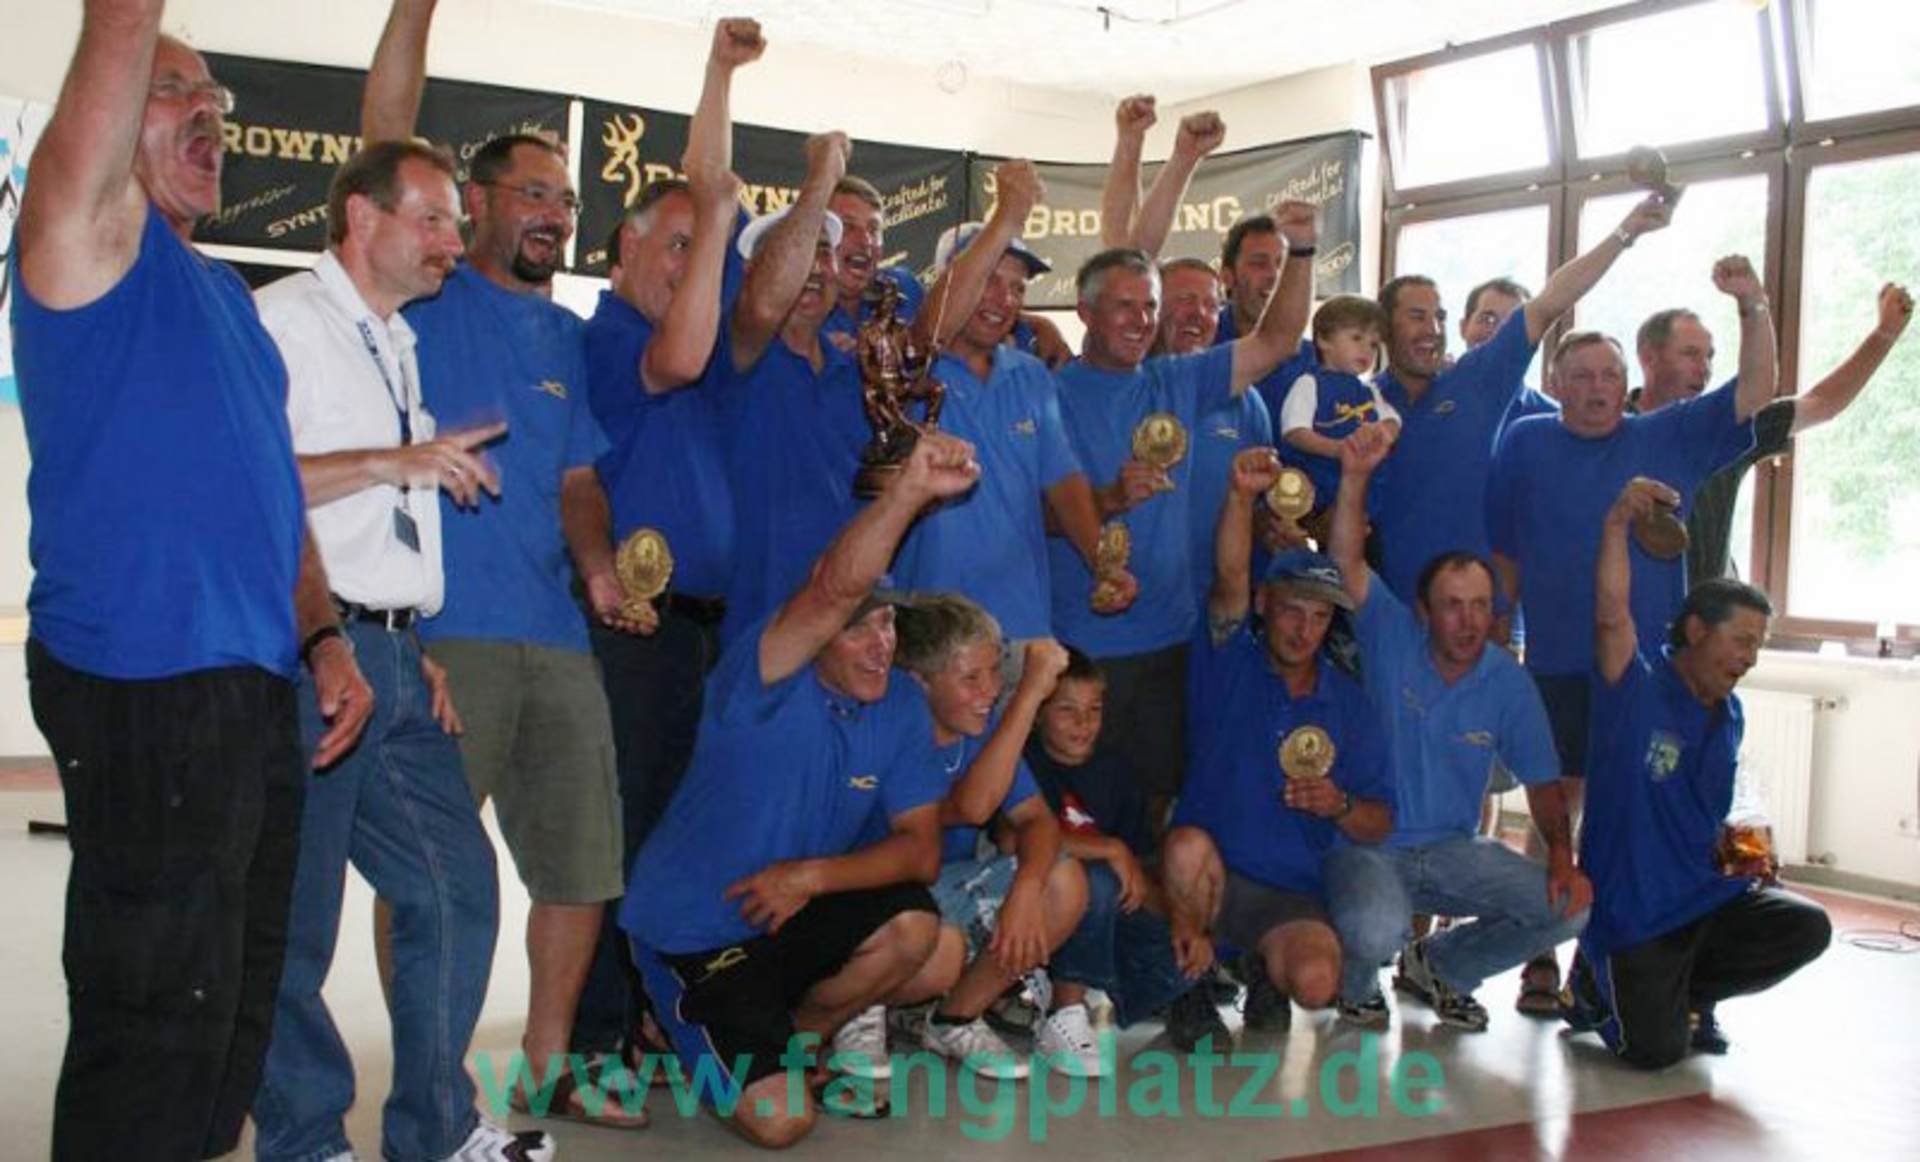  Club-WM 2008. fangplatz.de wünscht den Mosella-Jungs, dass sie mit einer Medaille wieder kommen. Die Vorbereitungen haben jetzt schon begonnen... ;-)